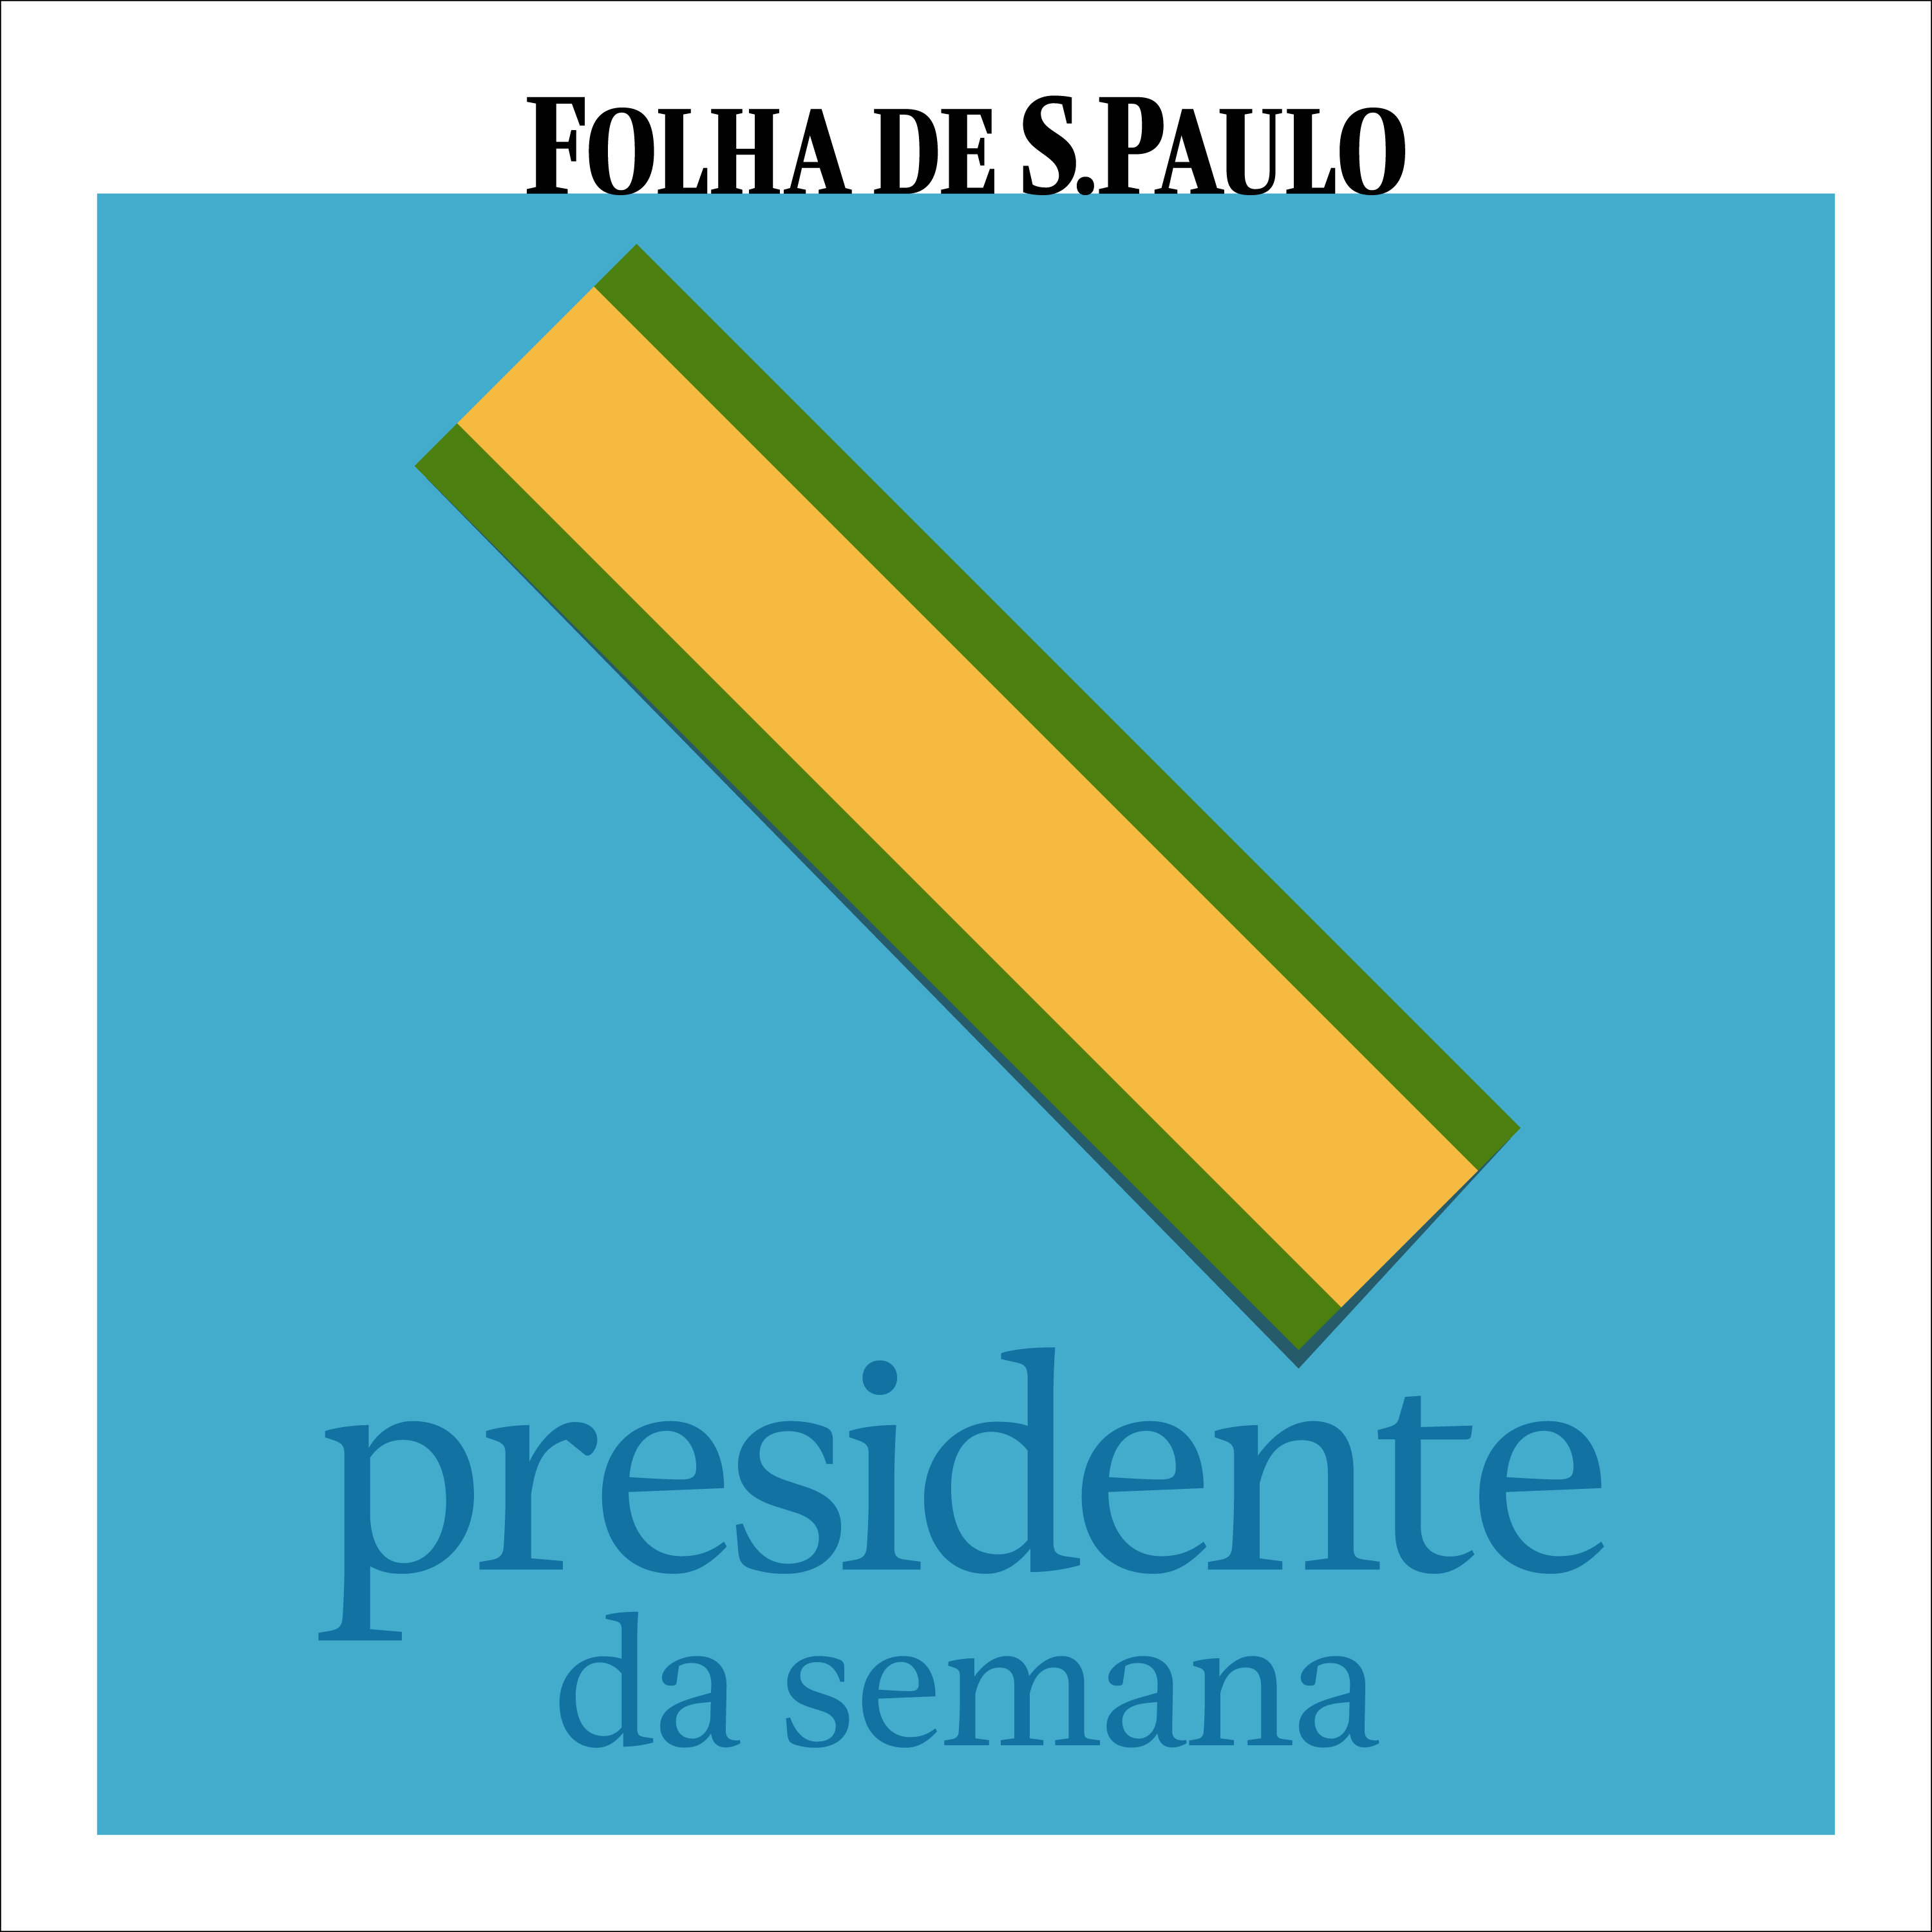 Presidente da Semana - Ep. 16 - Jânio Quadros, a renúncia, e João Goulart, o golpe